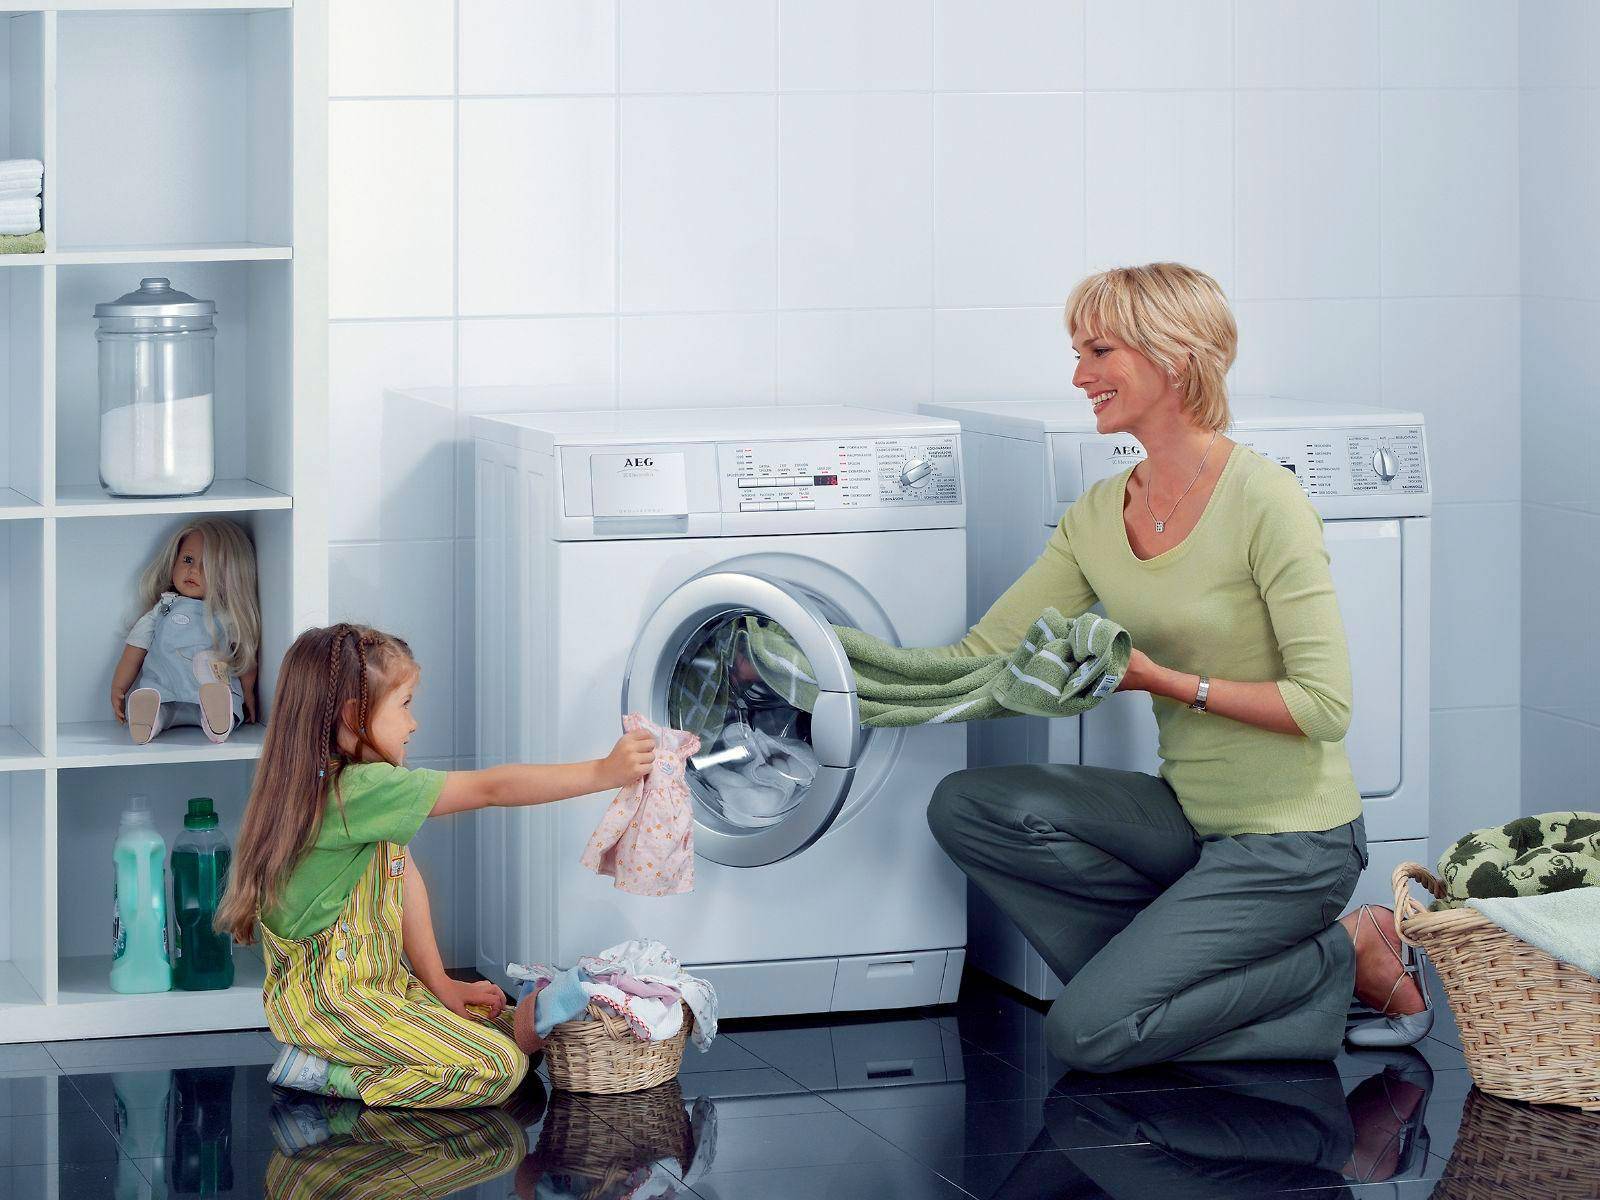 Какой фирмы стиральная машина лучше и надежнее в быту: характеристики и рейтинг востребованных моделей